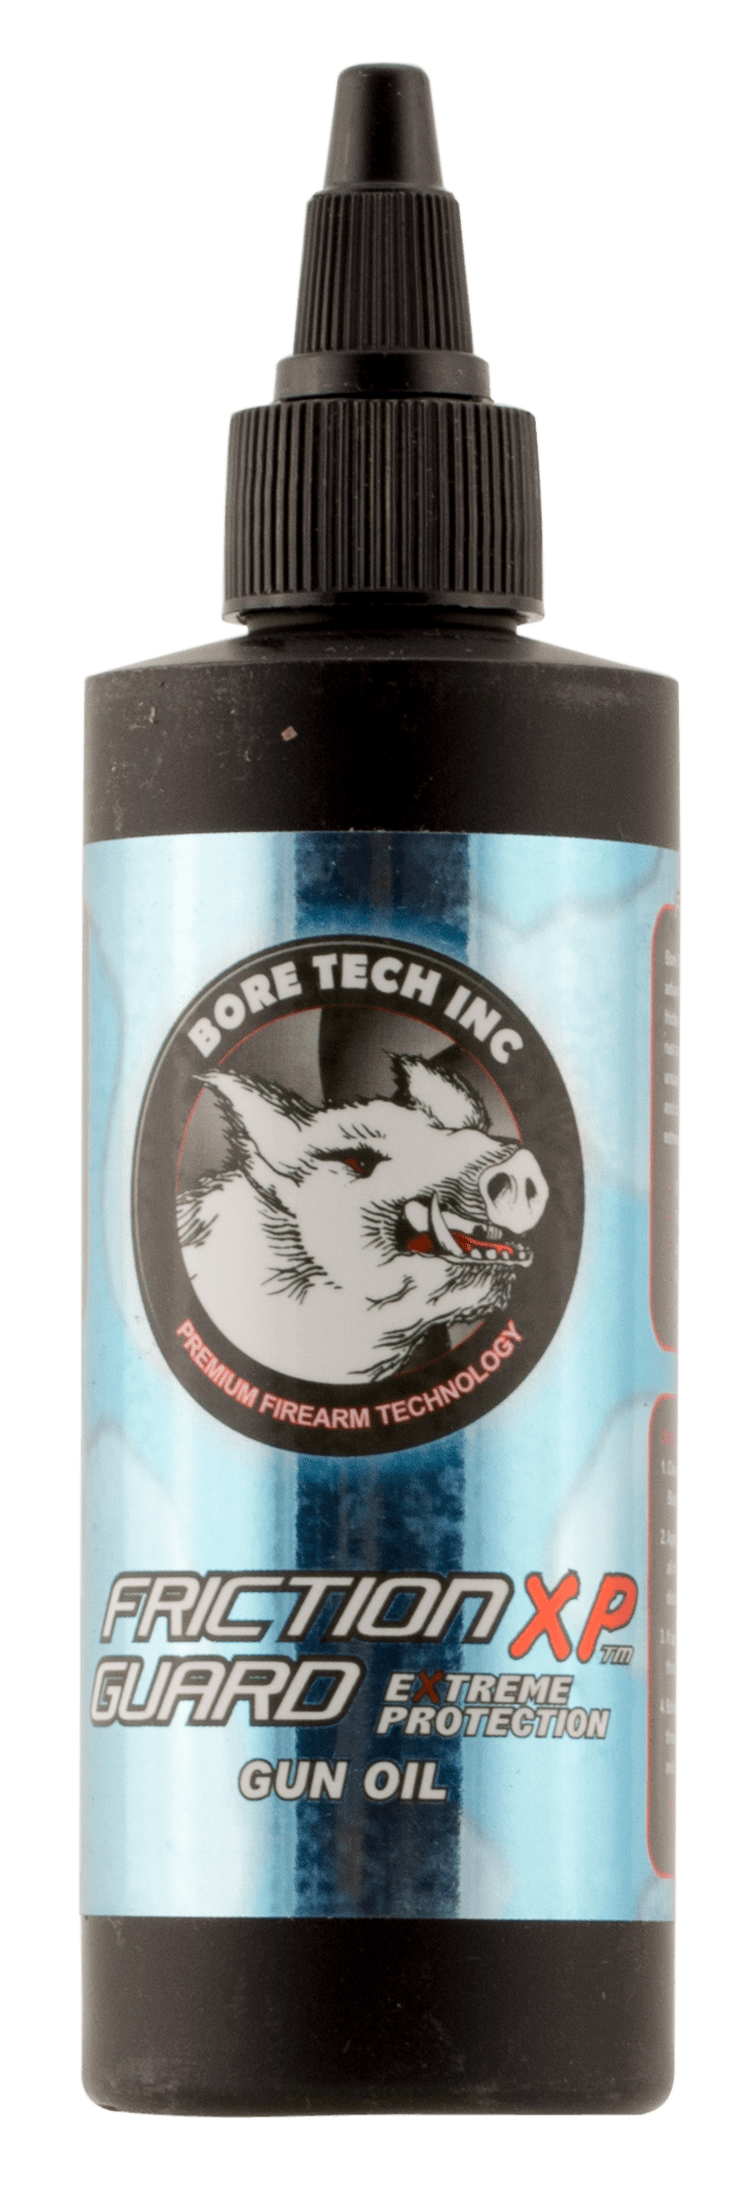 Bore Tech Bore Tech Friction Guard, Btech Btco-14004    Teflon Gun Oil   4oz Gun Care